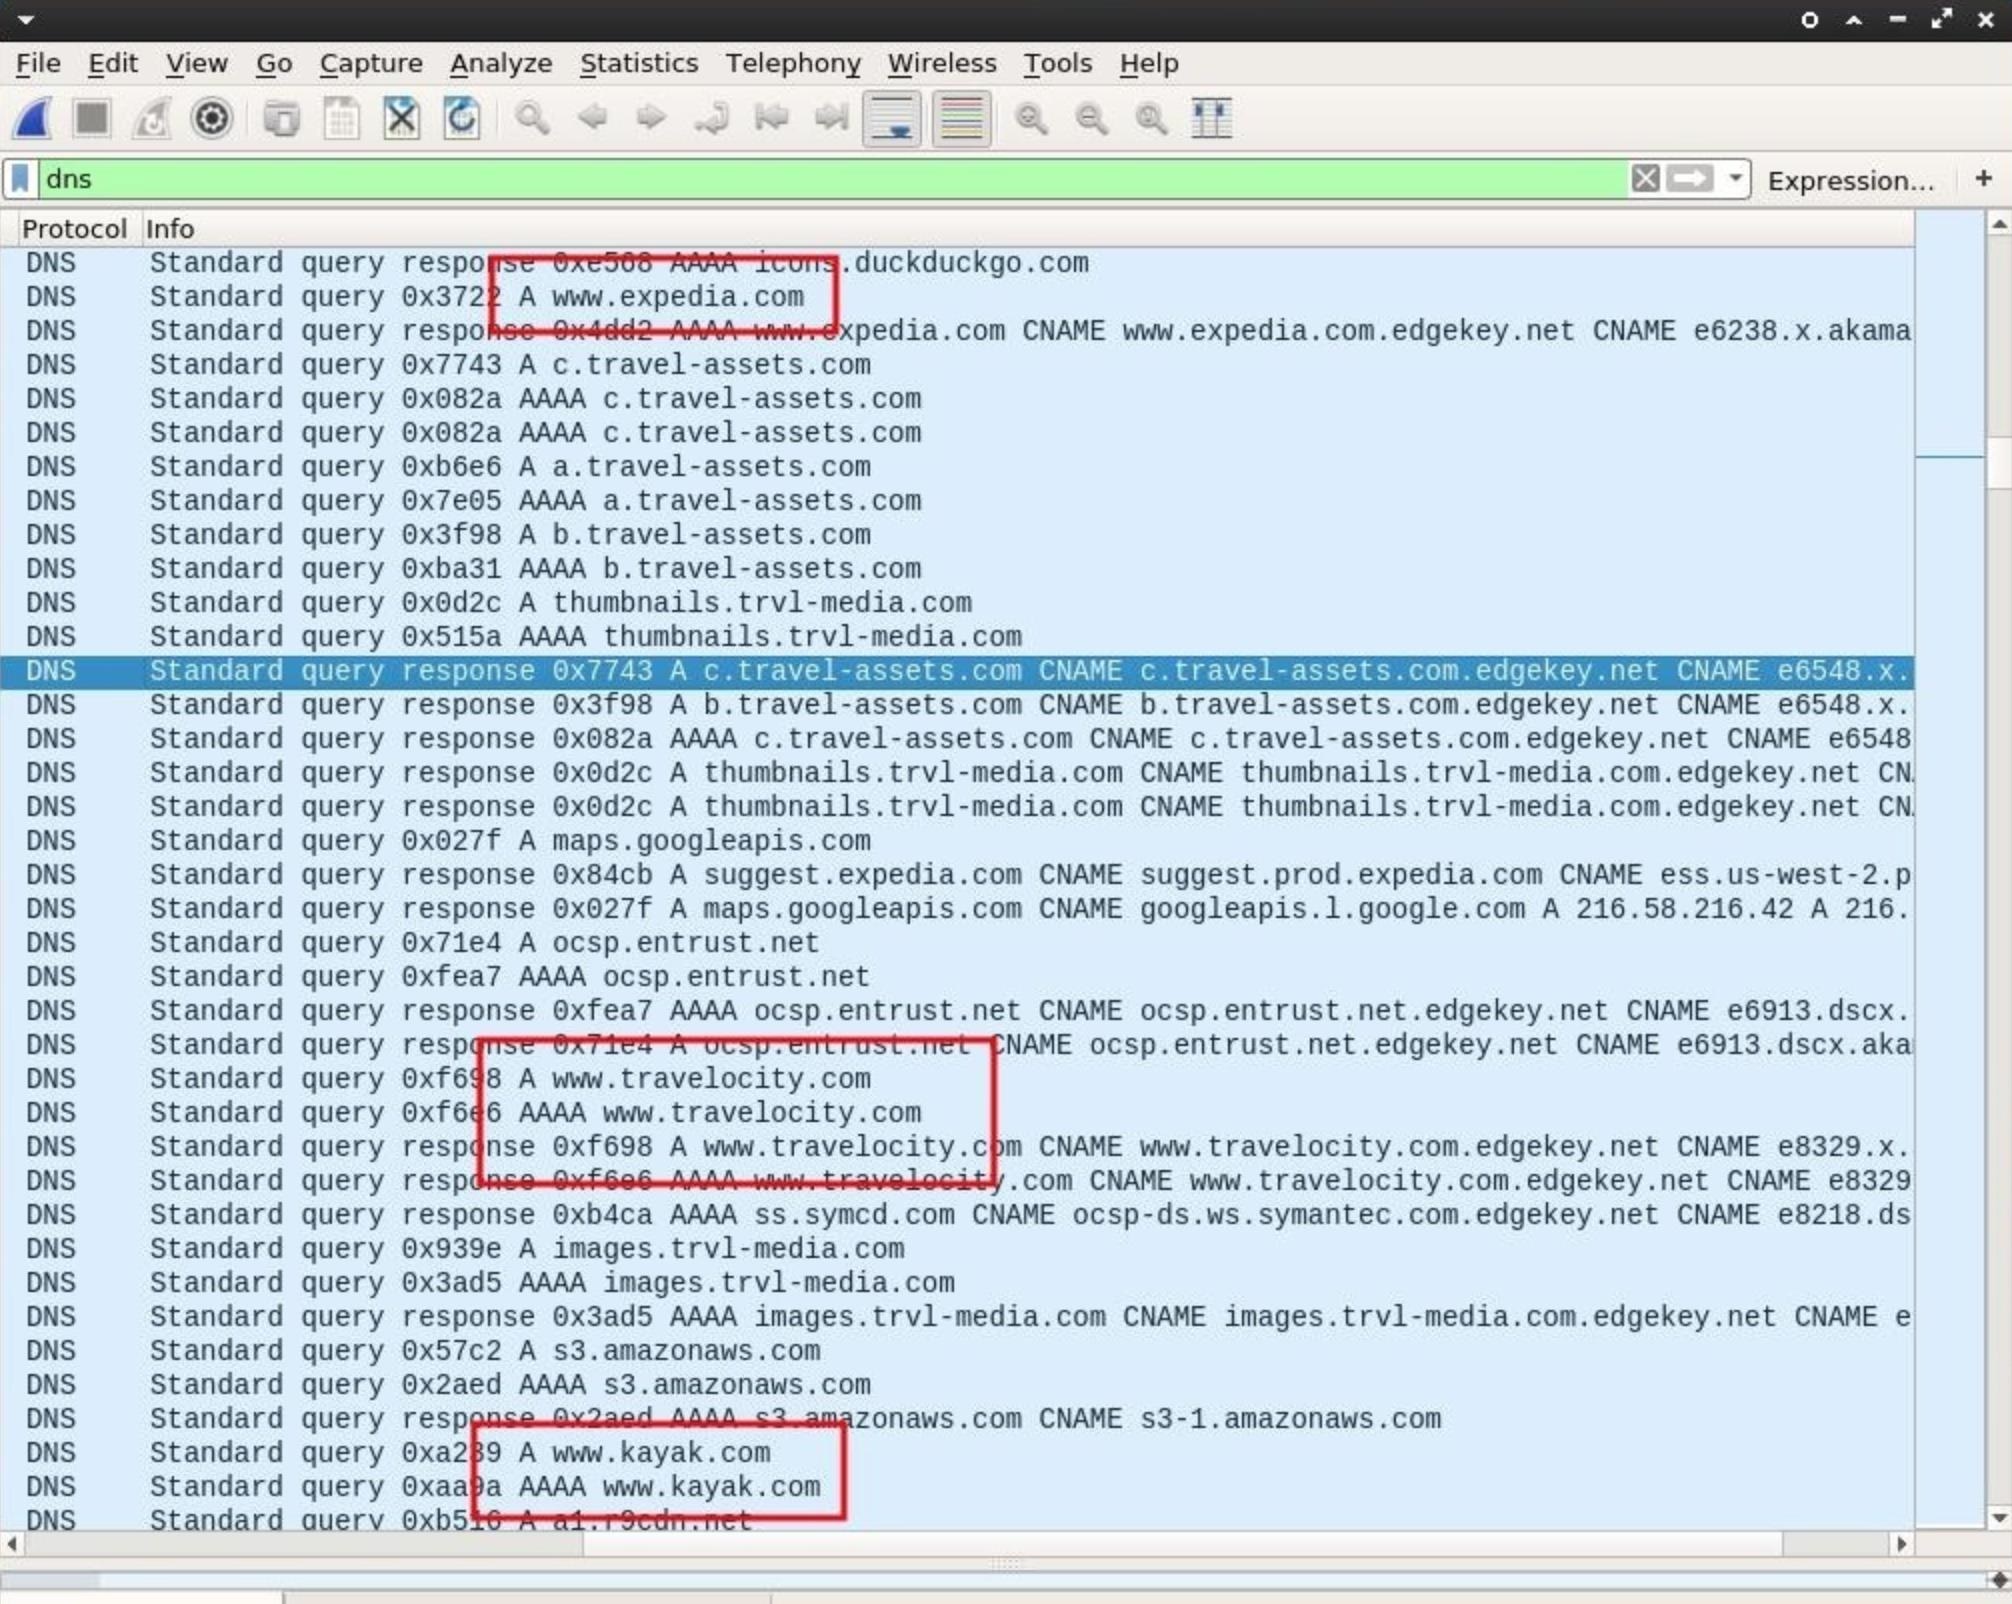 пример использования фильтра отображения для идентификации данных DNS-запросов в Wireshark